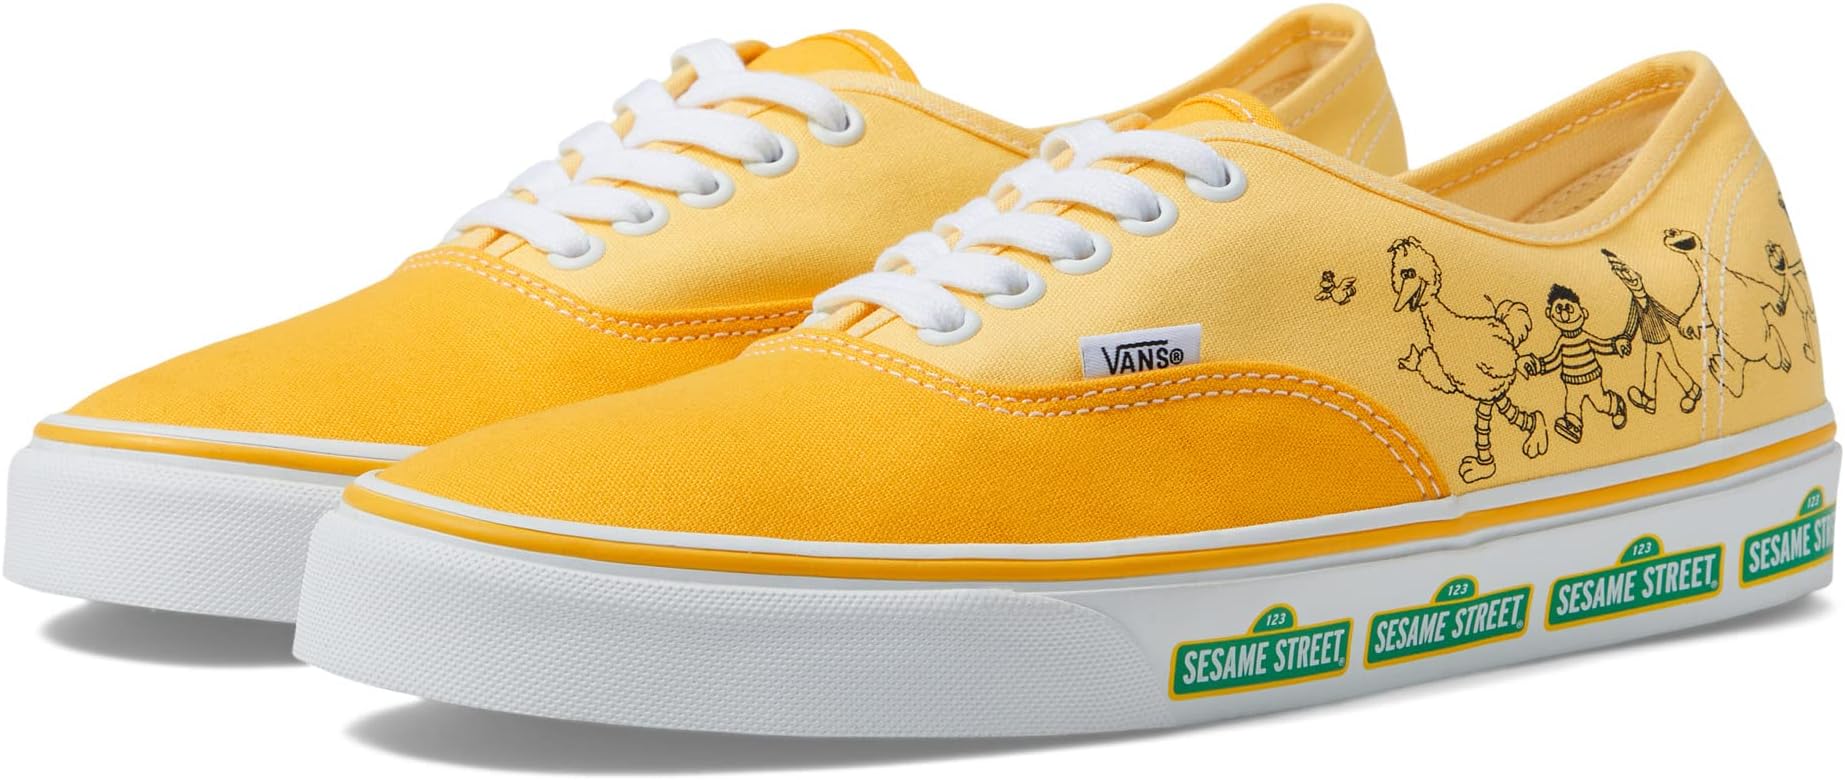 Кроссовки Authentic Vans, цвет Sesame Street Yellow кроссовки vans authentic цвет sesame street yellow